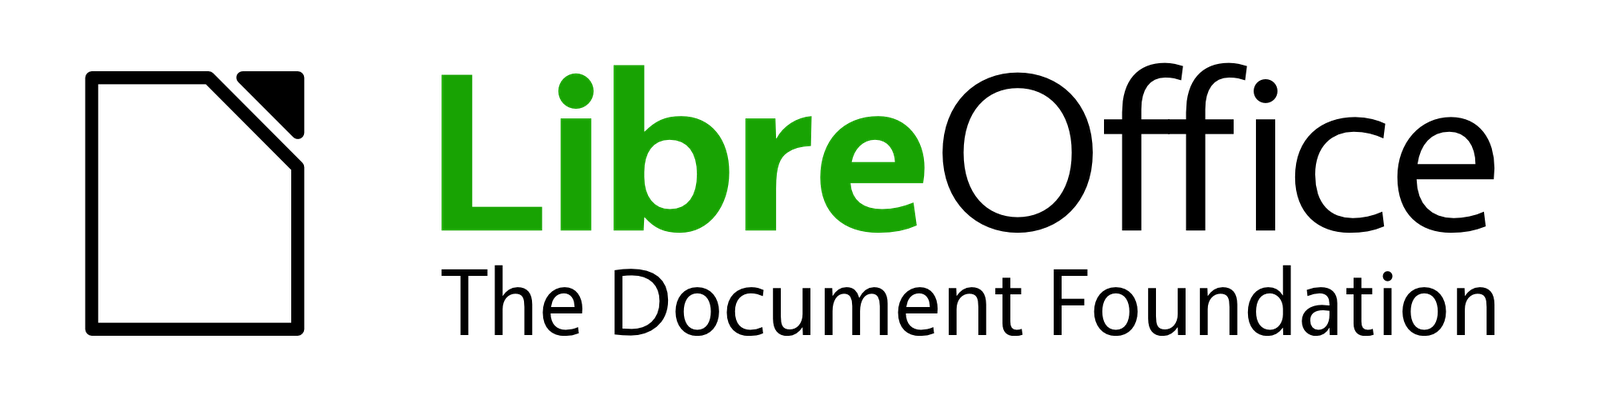 10Libre.com Logo photo - 1